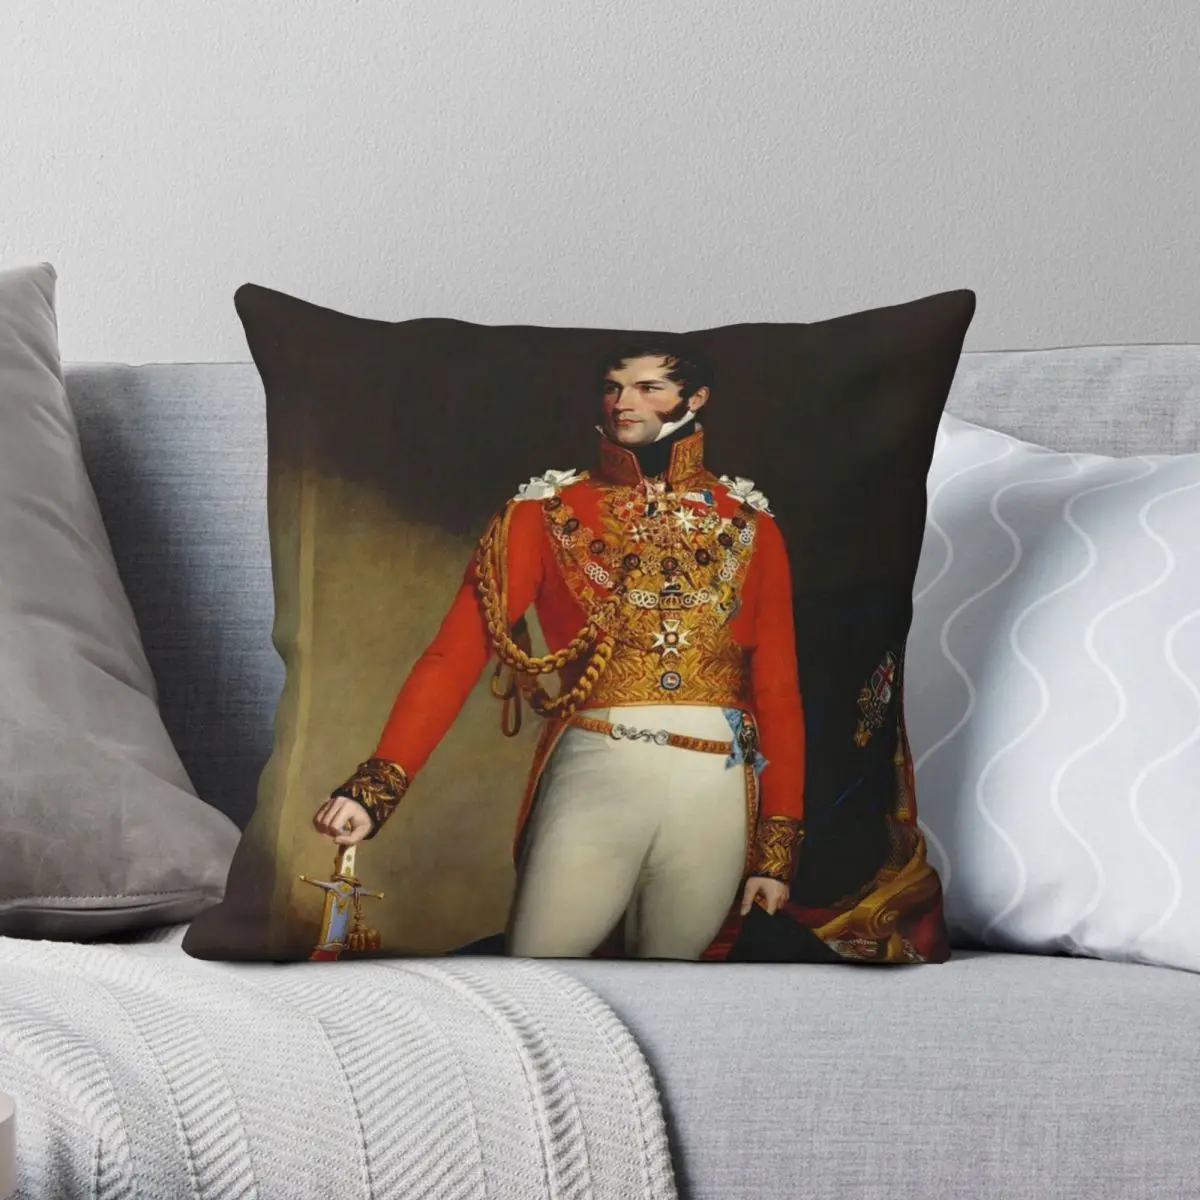 

King Leopold I Of Belgium 2 Square Pillowcase Polyester Linen Velvet Pattern Zip Decor Pillow Case Room Cushion Cover 18"